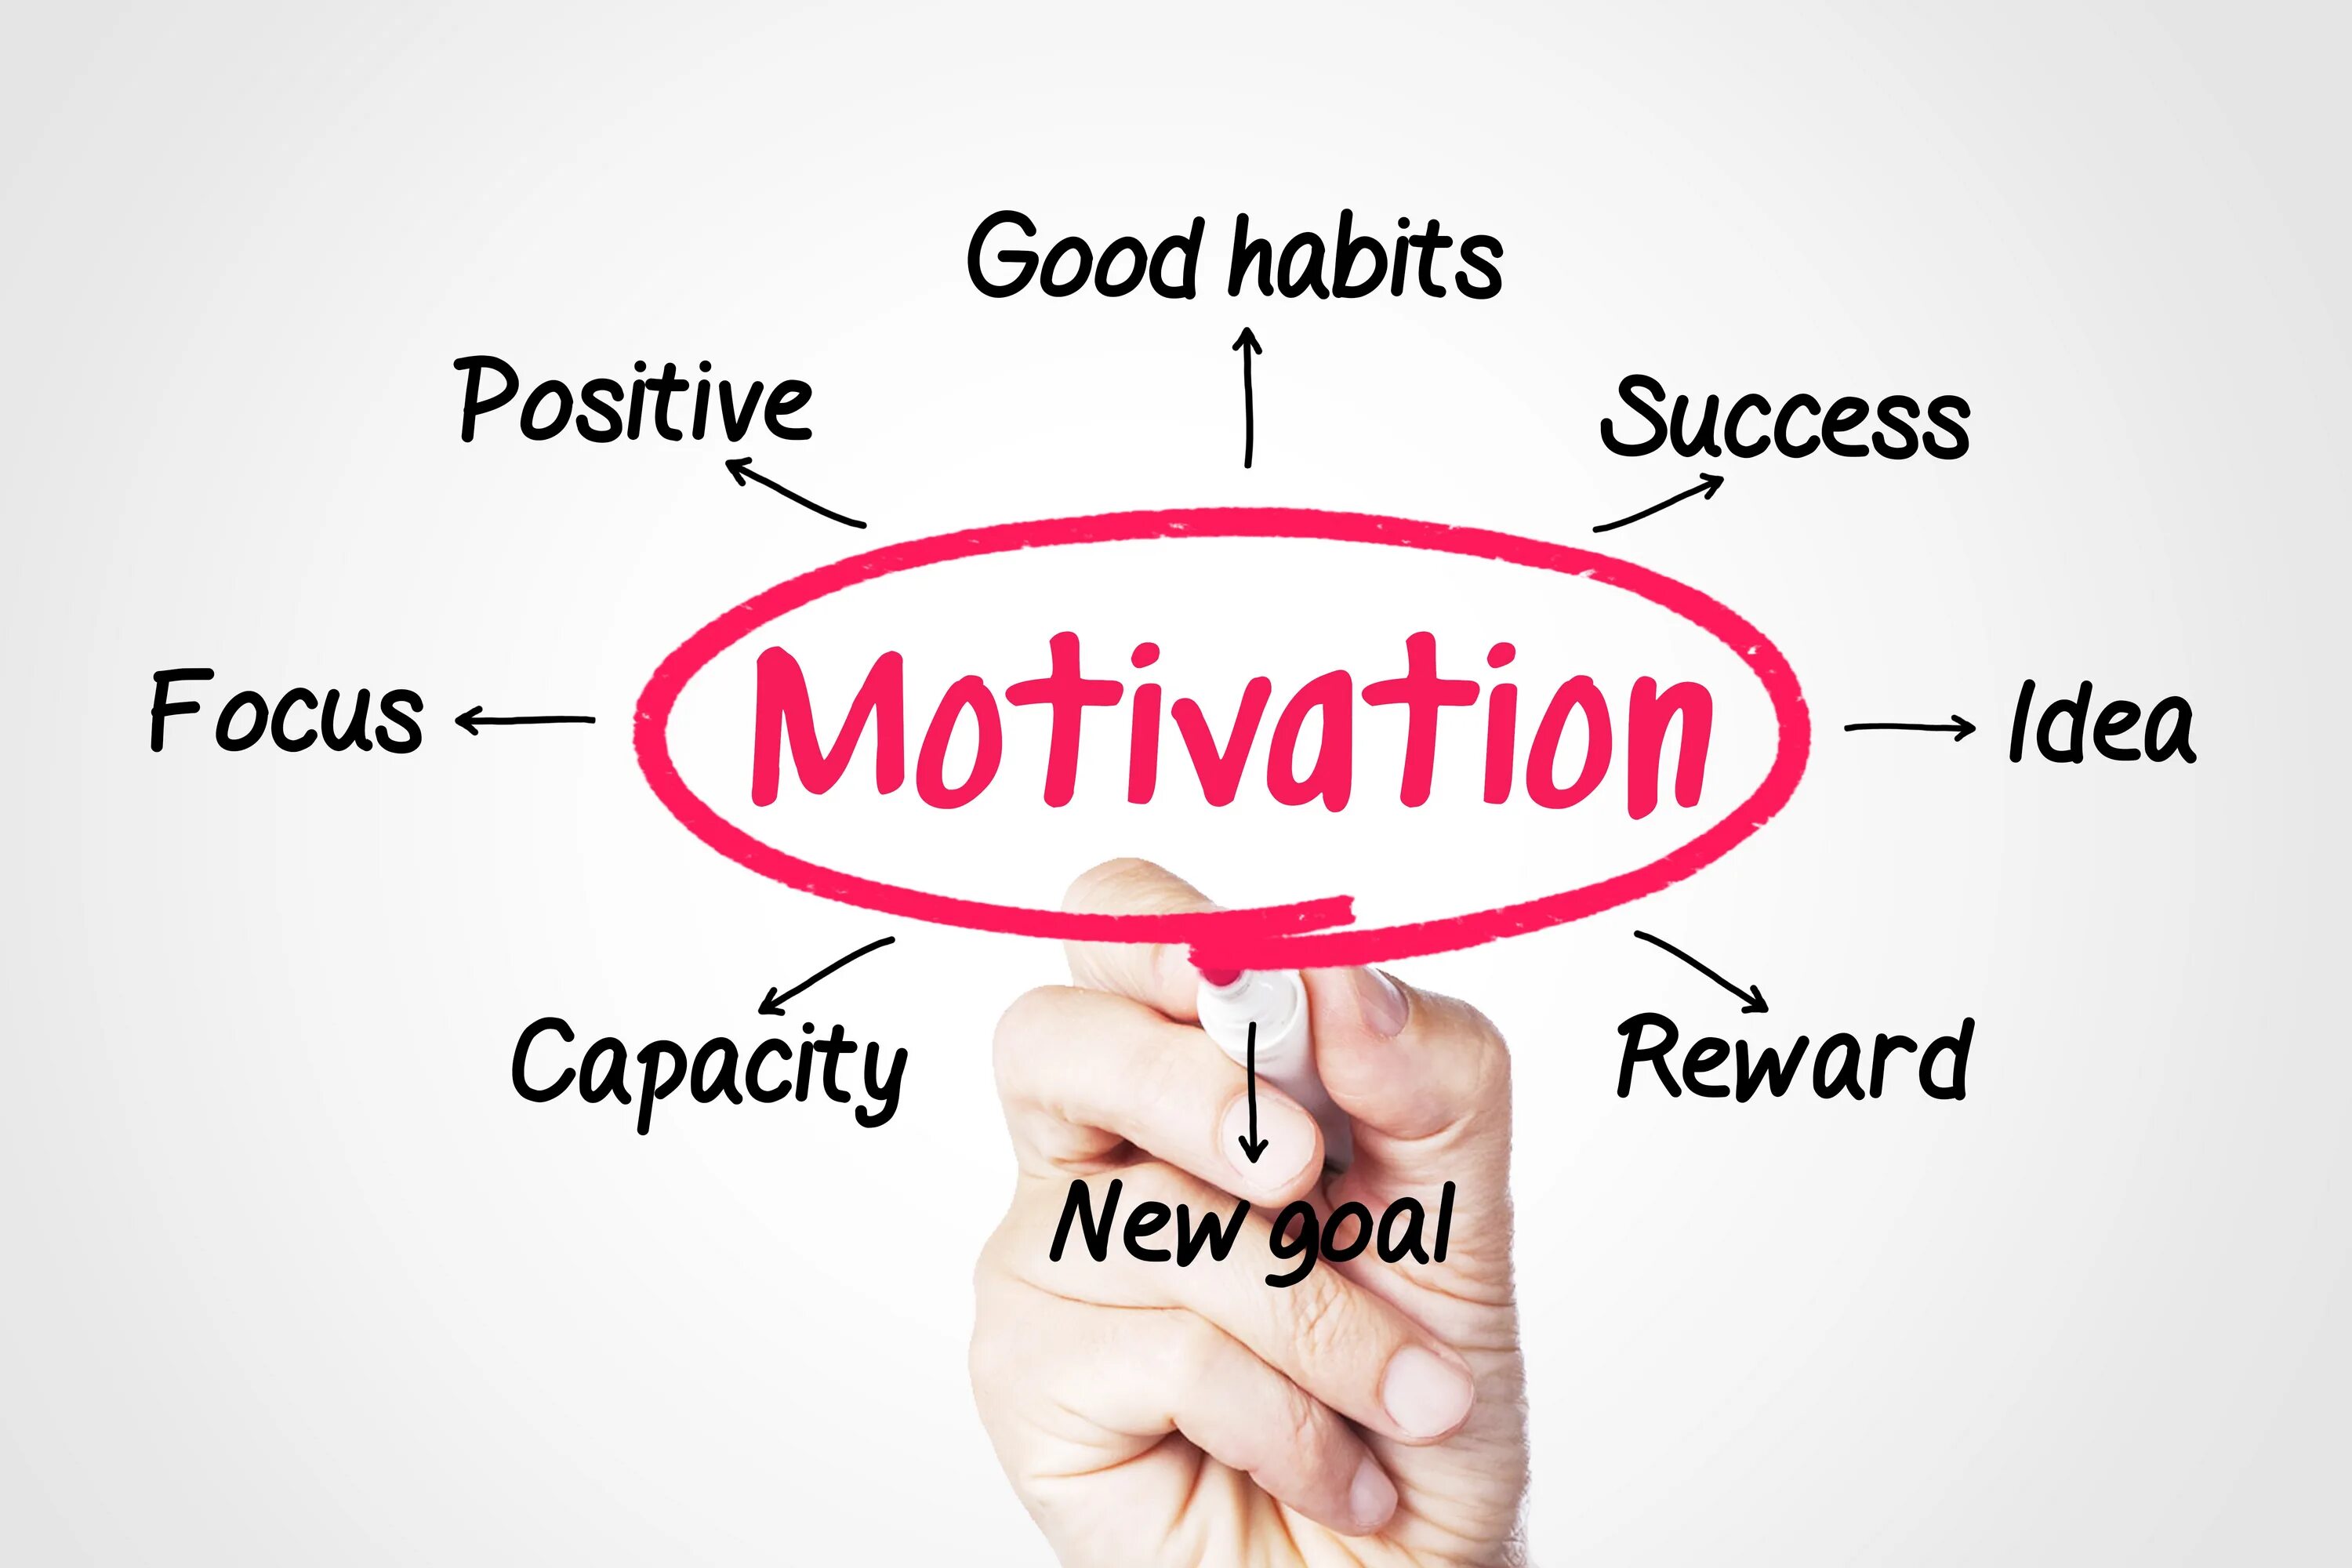 Motivated learning. Мотивация. Мотивация на английском. @Pic мотивация. Мотивации in.